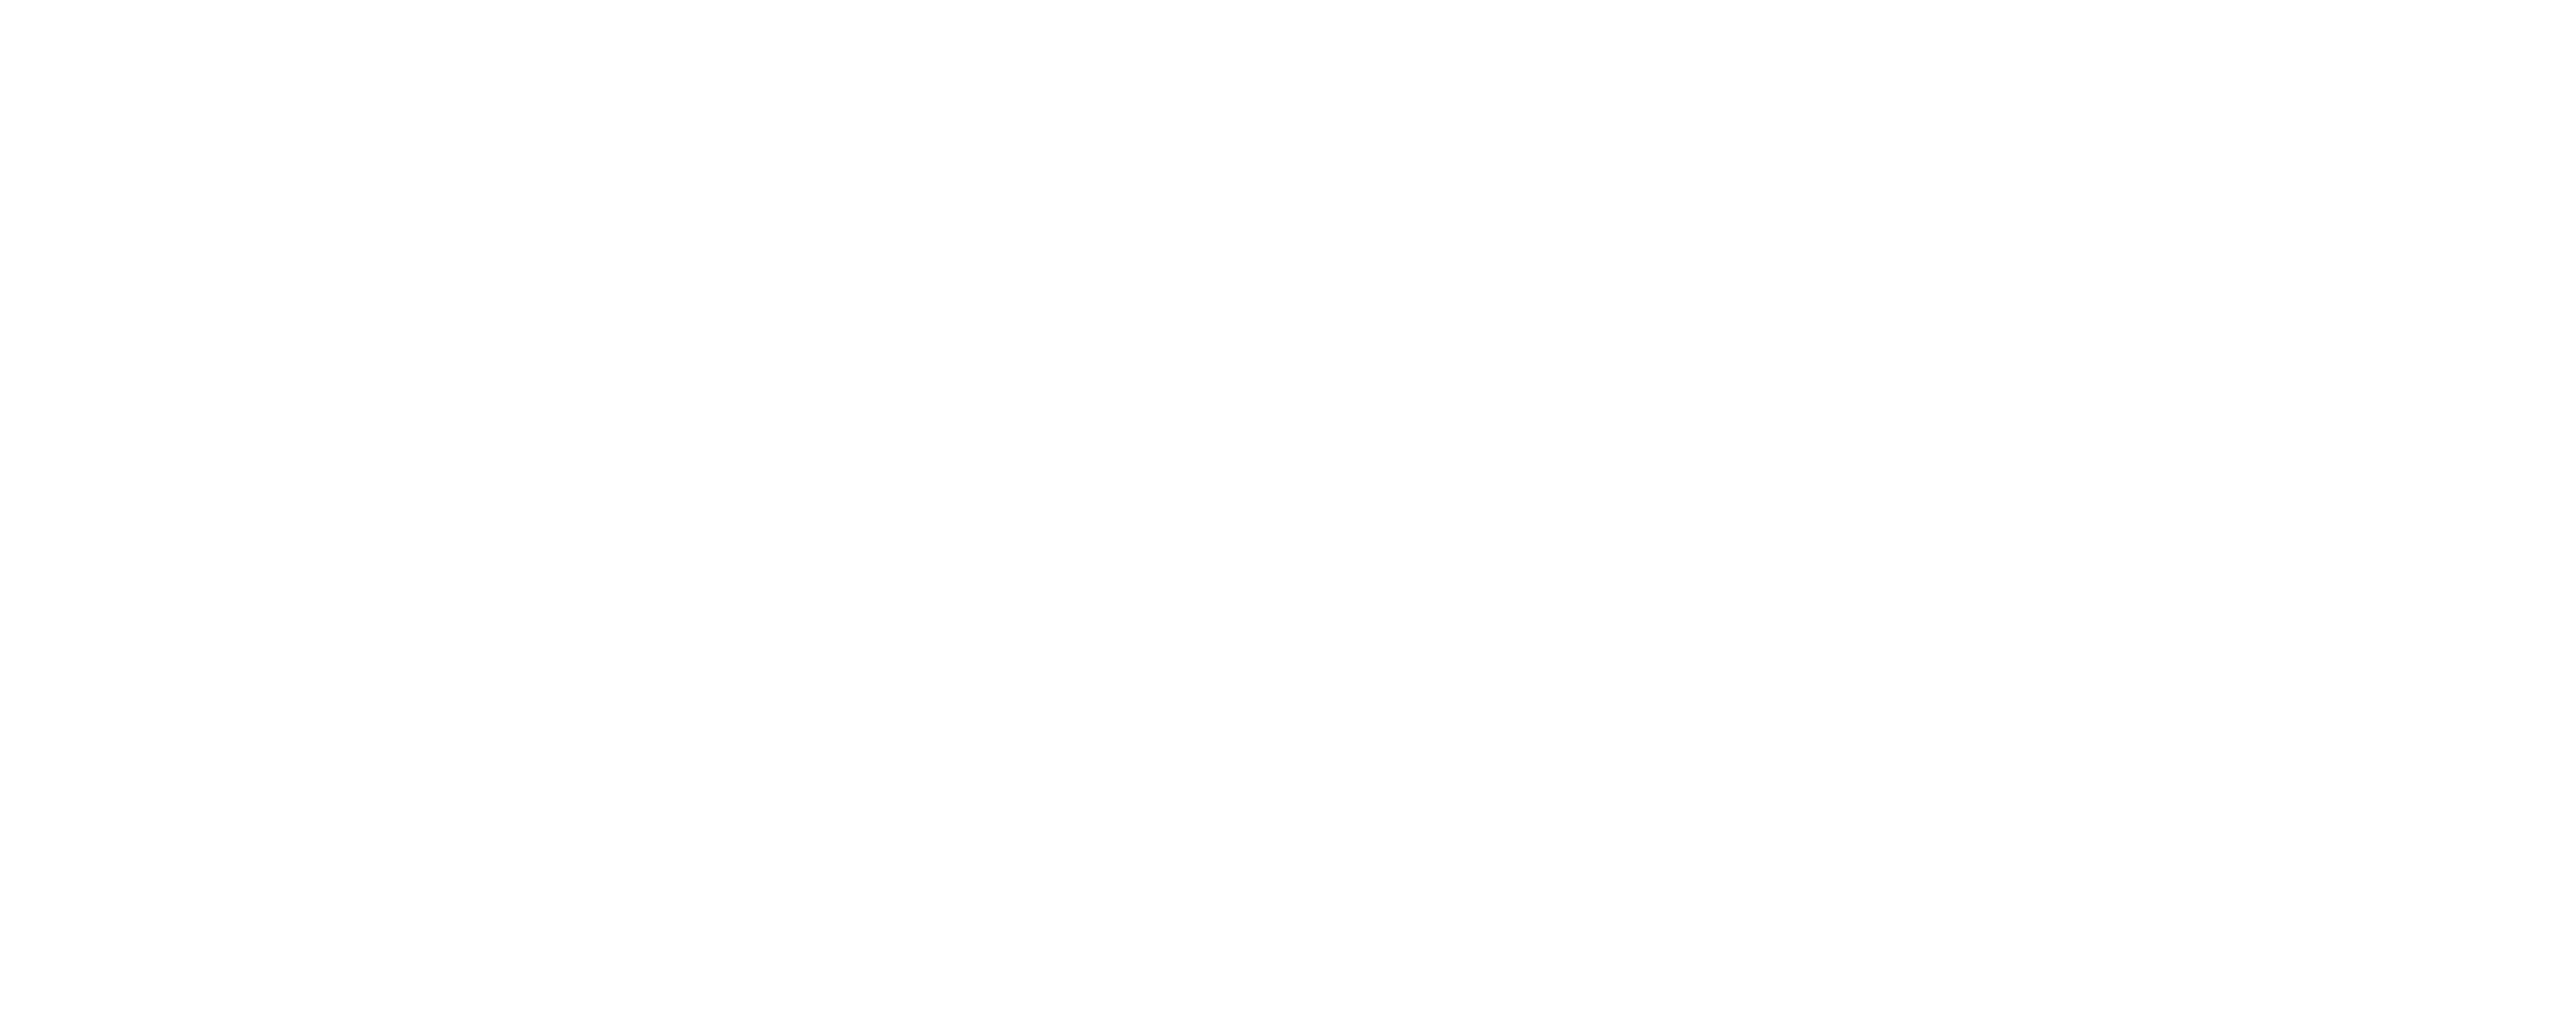 Swagat Indian Cuisine